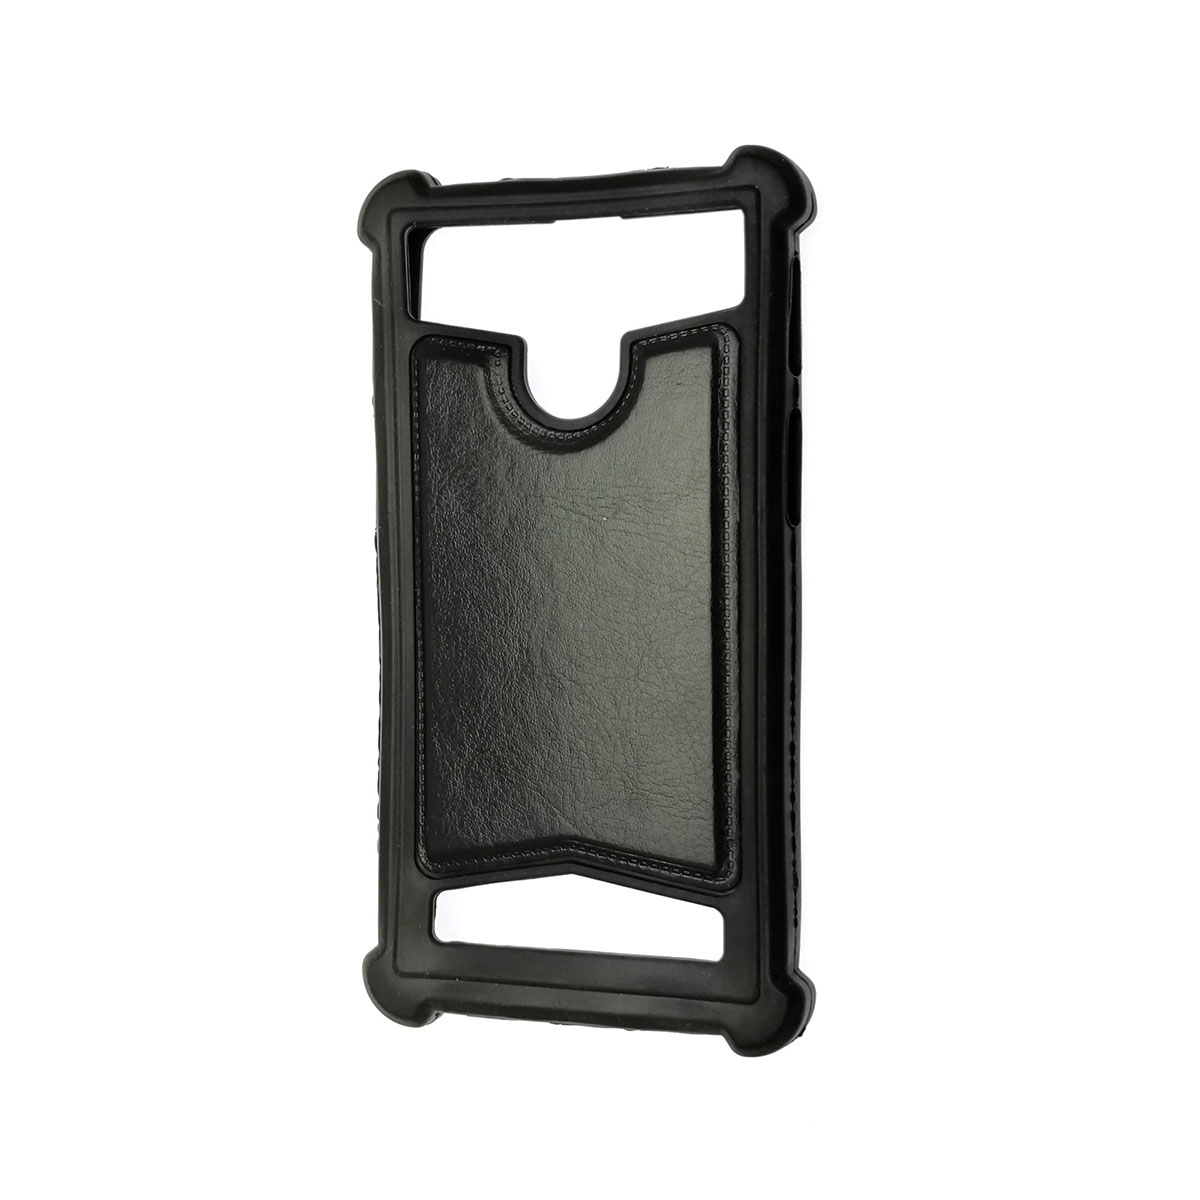 Чехол накладка универсальная 4.5 - 5.0 дюймов, силикон, экокожа, цвет черный.